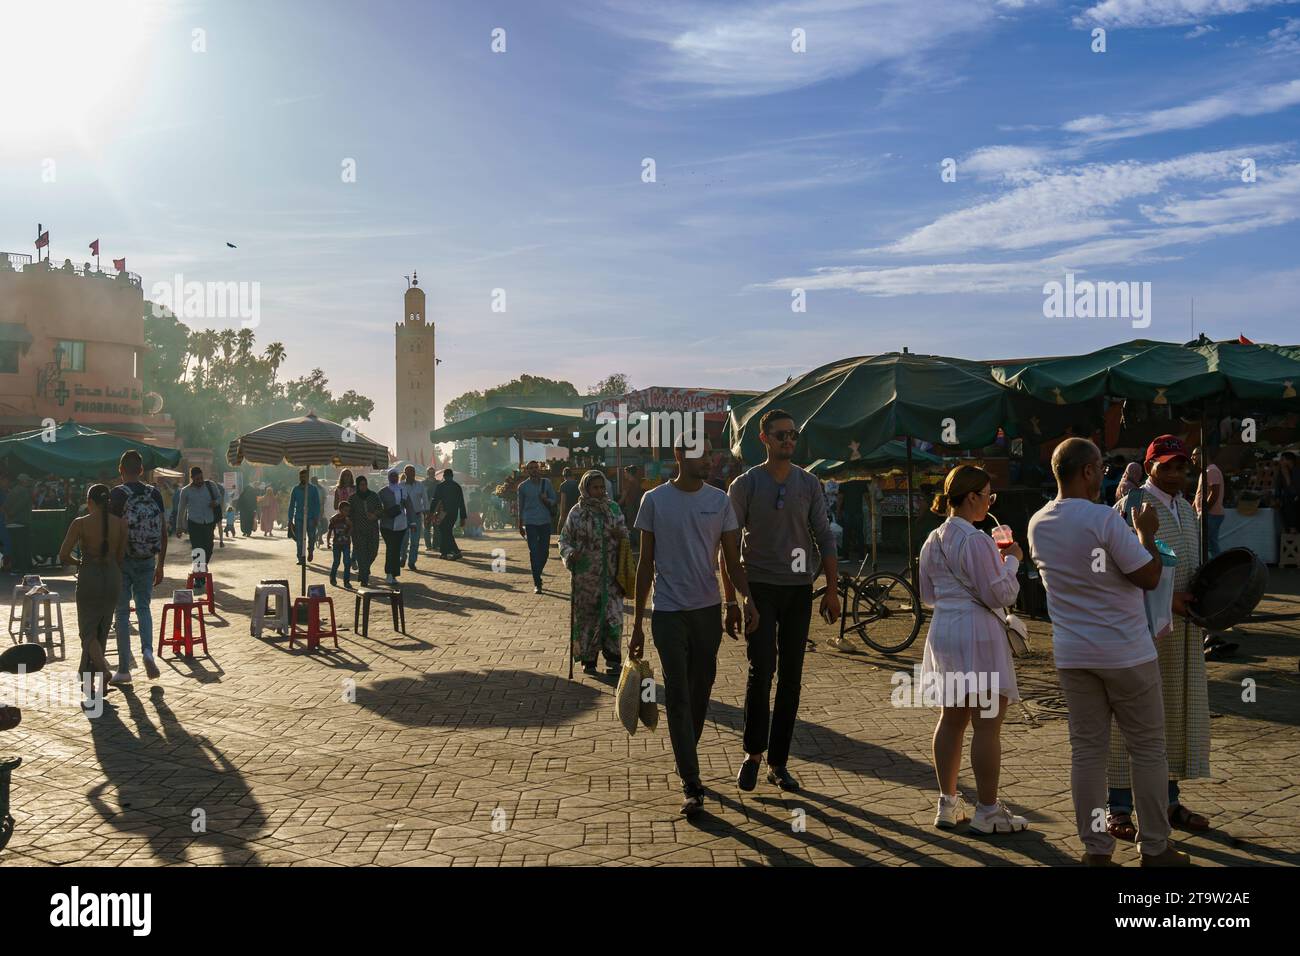 Afrique du Nord. Maroc. Marrakech. Les gens marchent à la place Jemaa el fna Banque D'Images